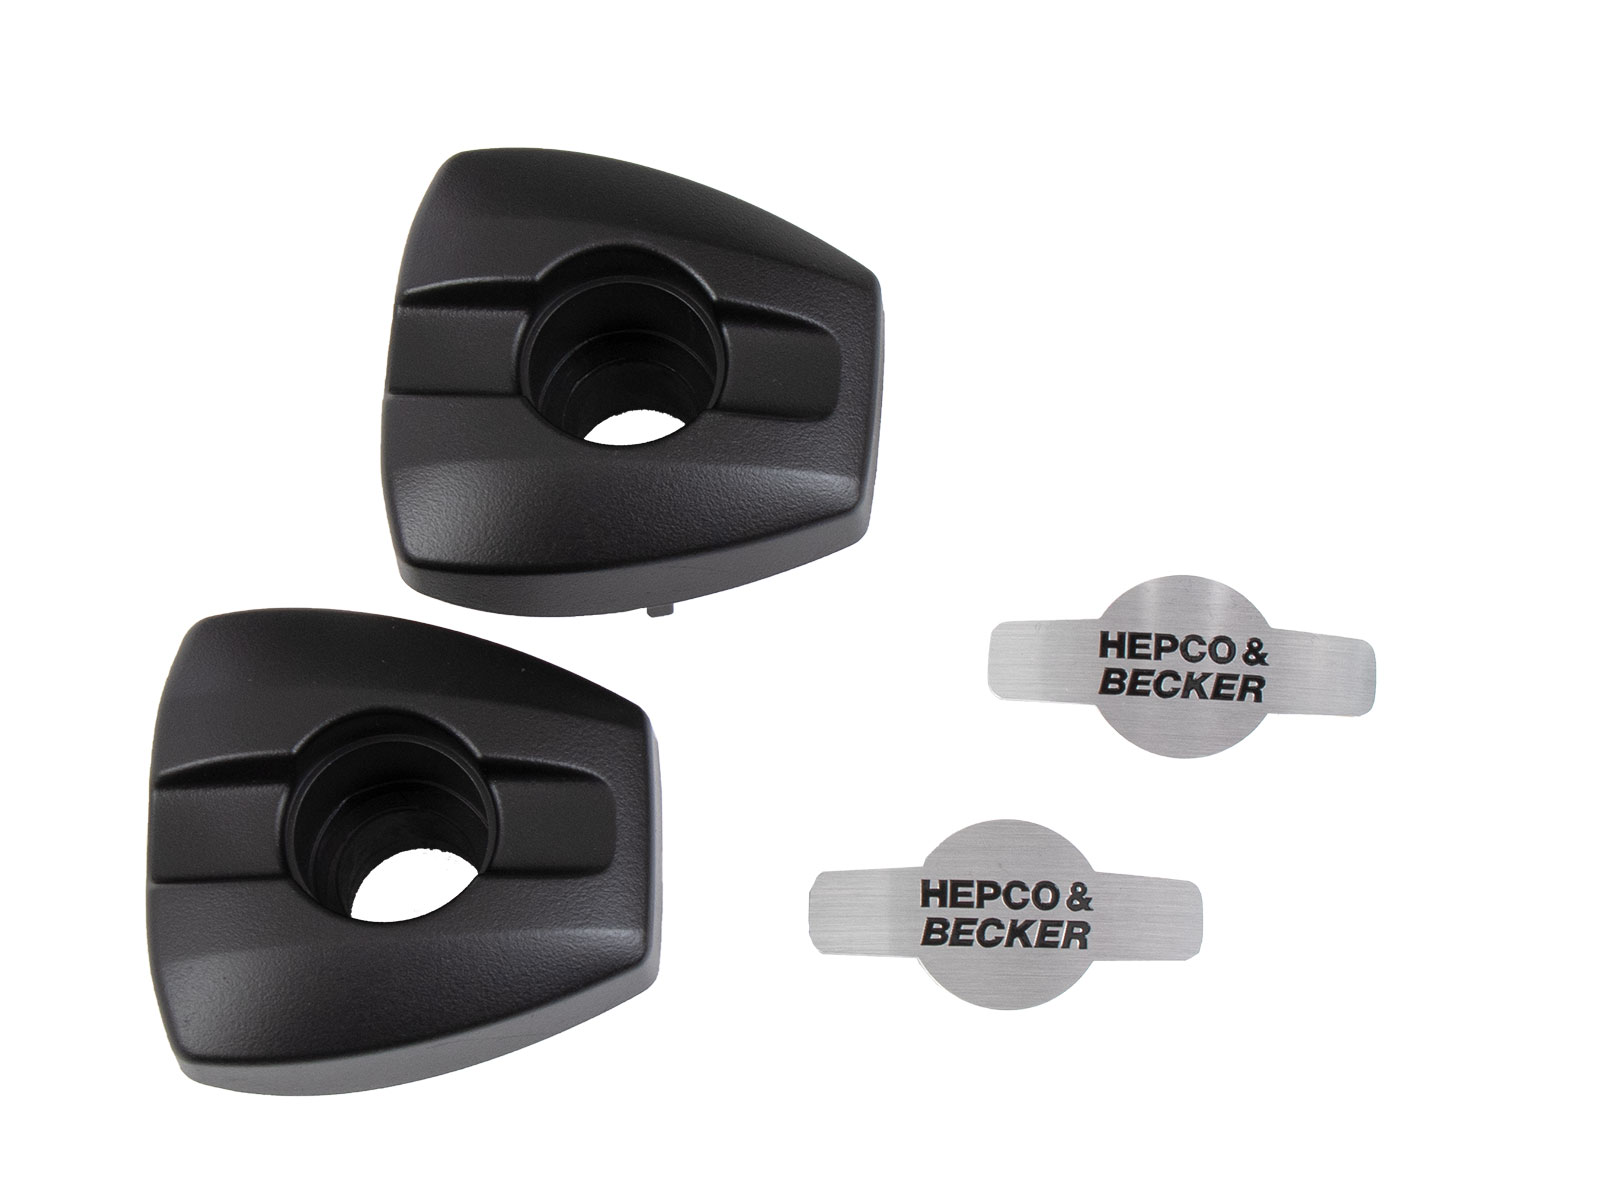 Ersatz Protection-Pad Köpfe (für Hepco&Becker Motorschutzbügel mit integrierten Protection Pads) *neue Version*